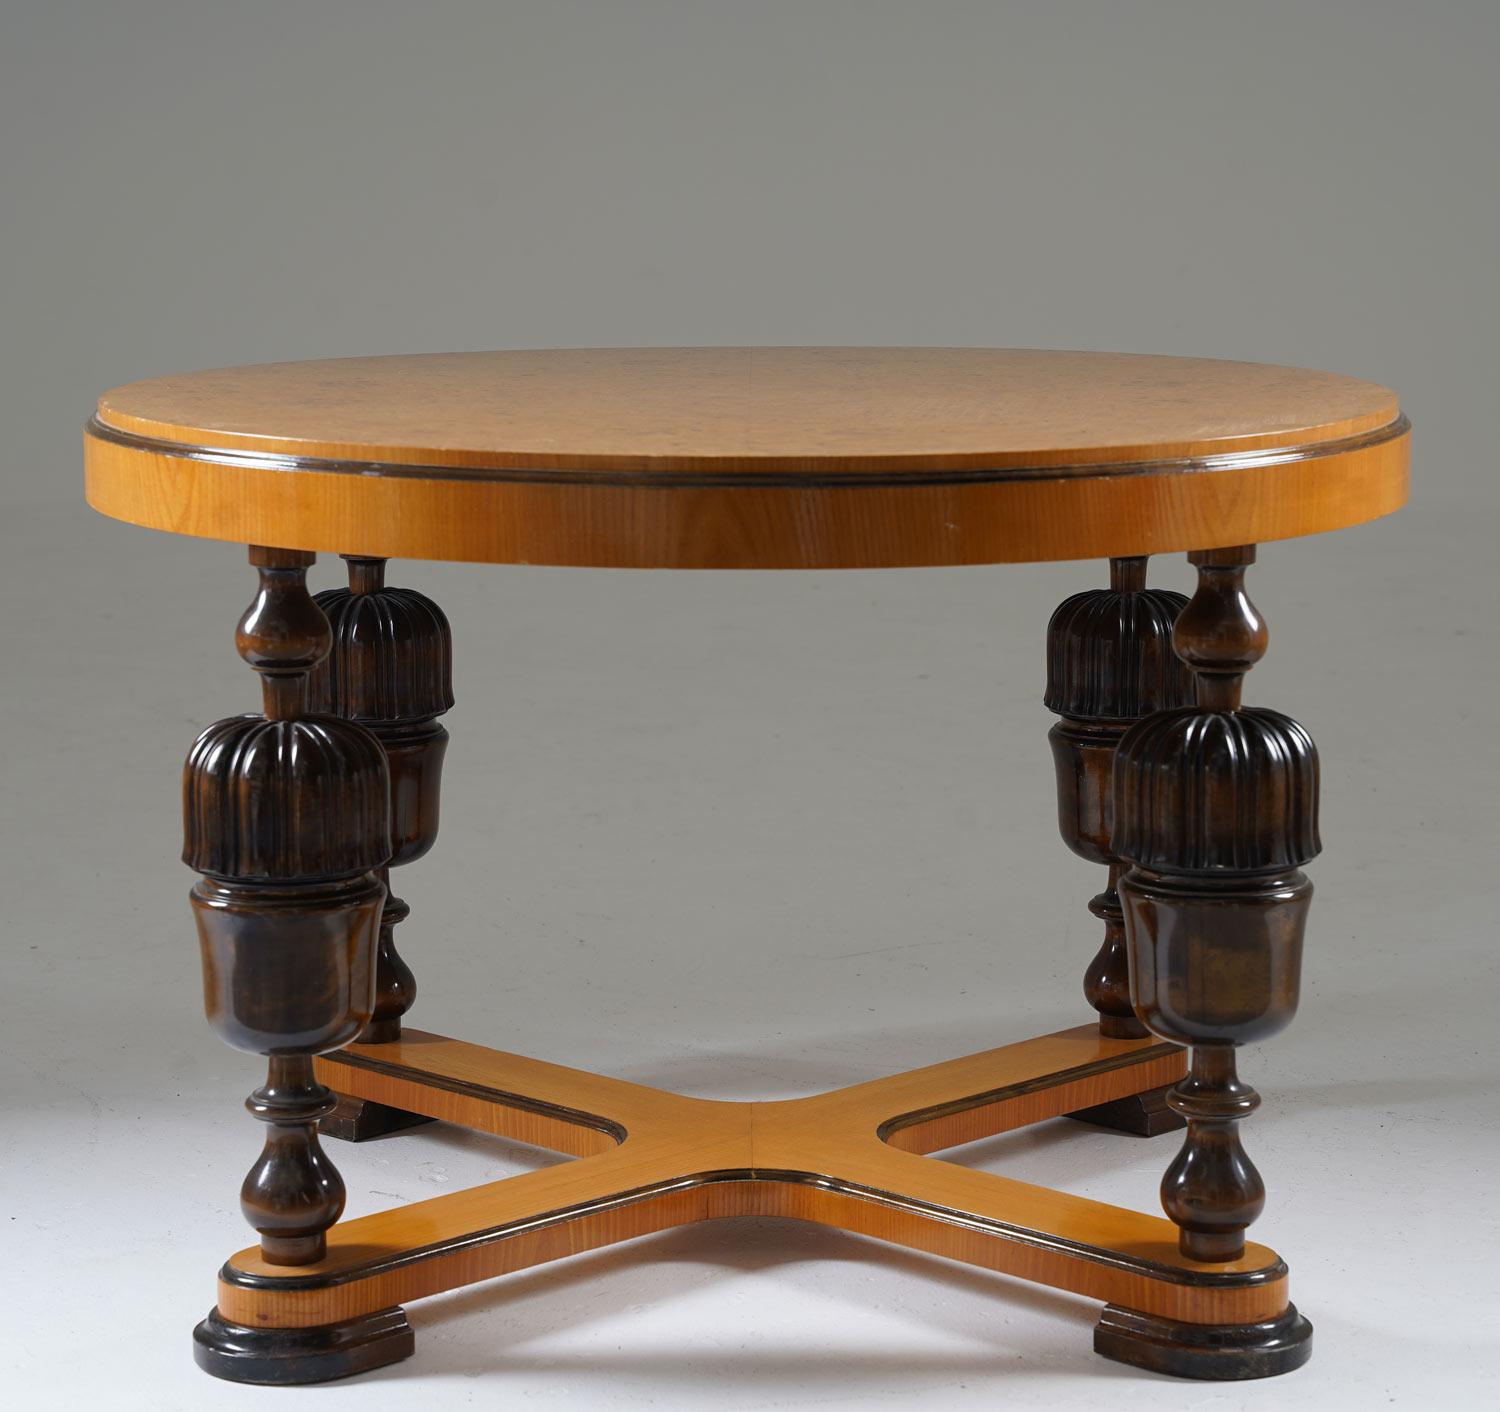 Elégante table basse de style art déco / grâce suédoise, produite en Suède dans les années 1930.
Cette table présente un épais plateau circulaire en placage de racines d'orme. Le plateau de la table est soutenu par quatre pieds richement décorés,